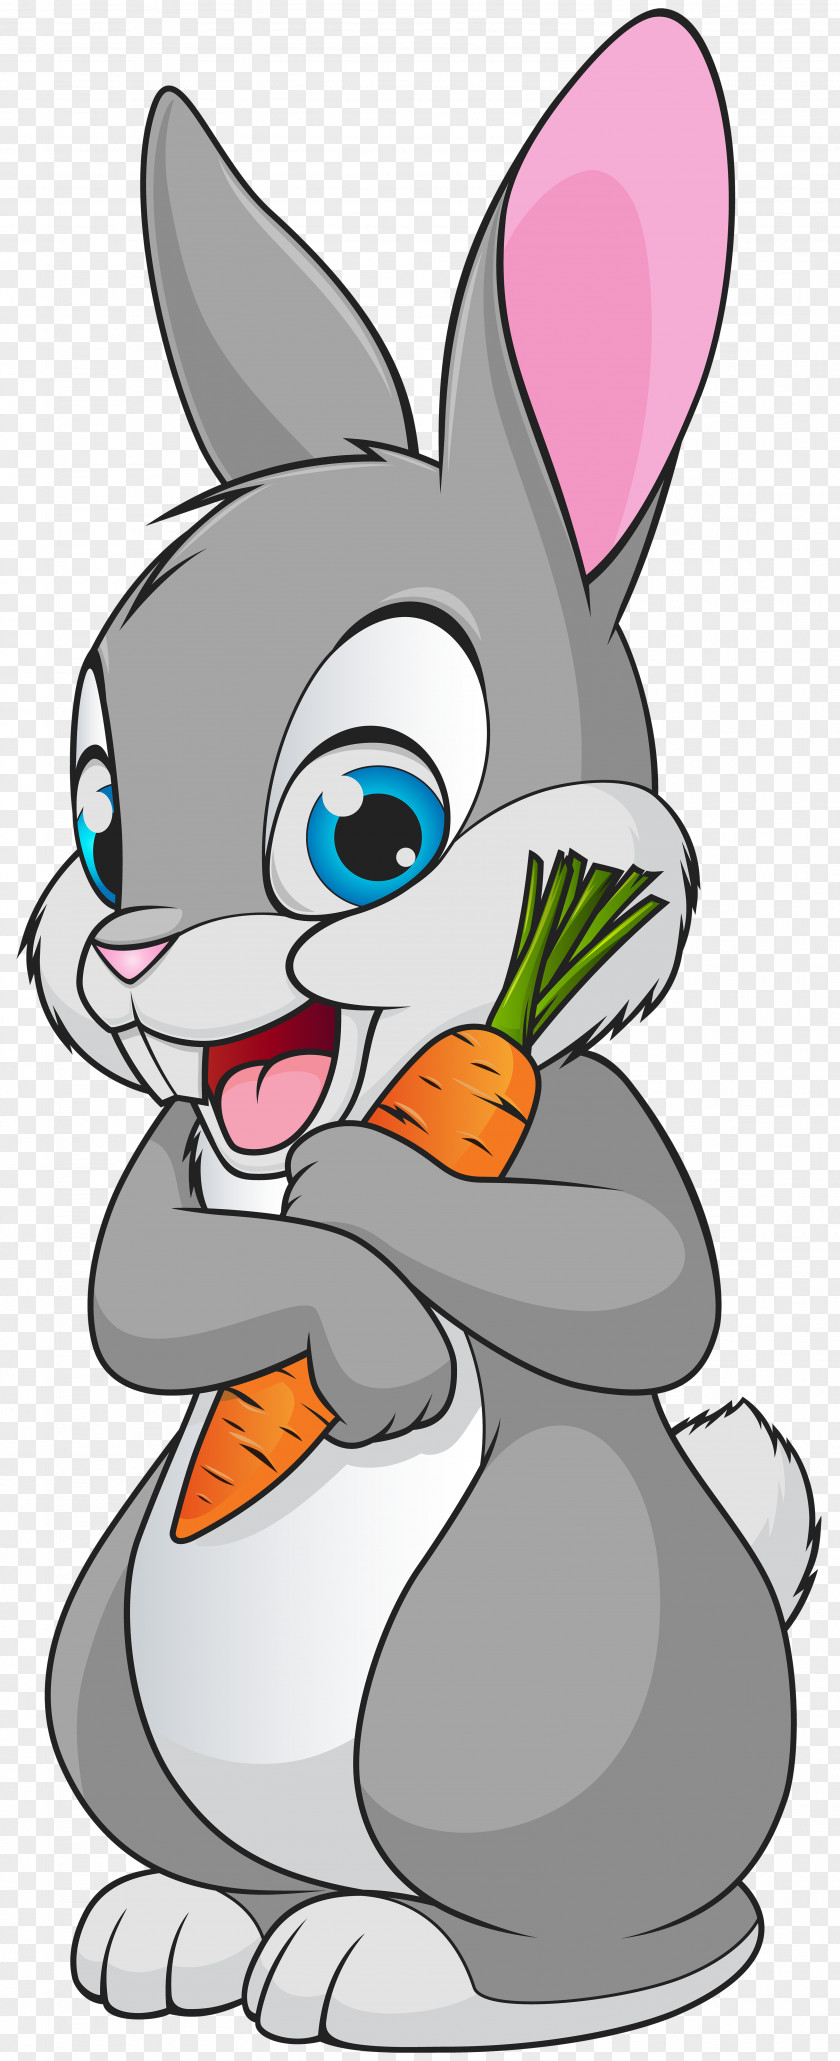 Cute Bunny Cartoon Transparent Clip Art Image Bugs Rabbit PNG